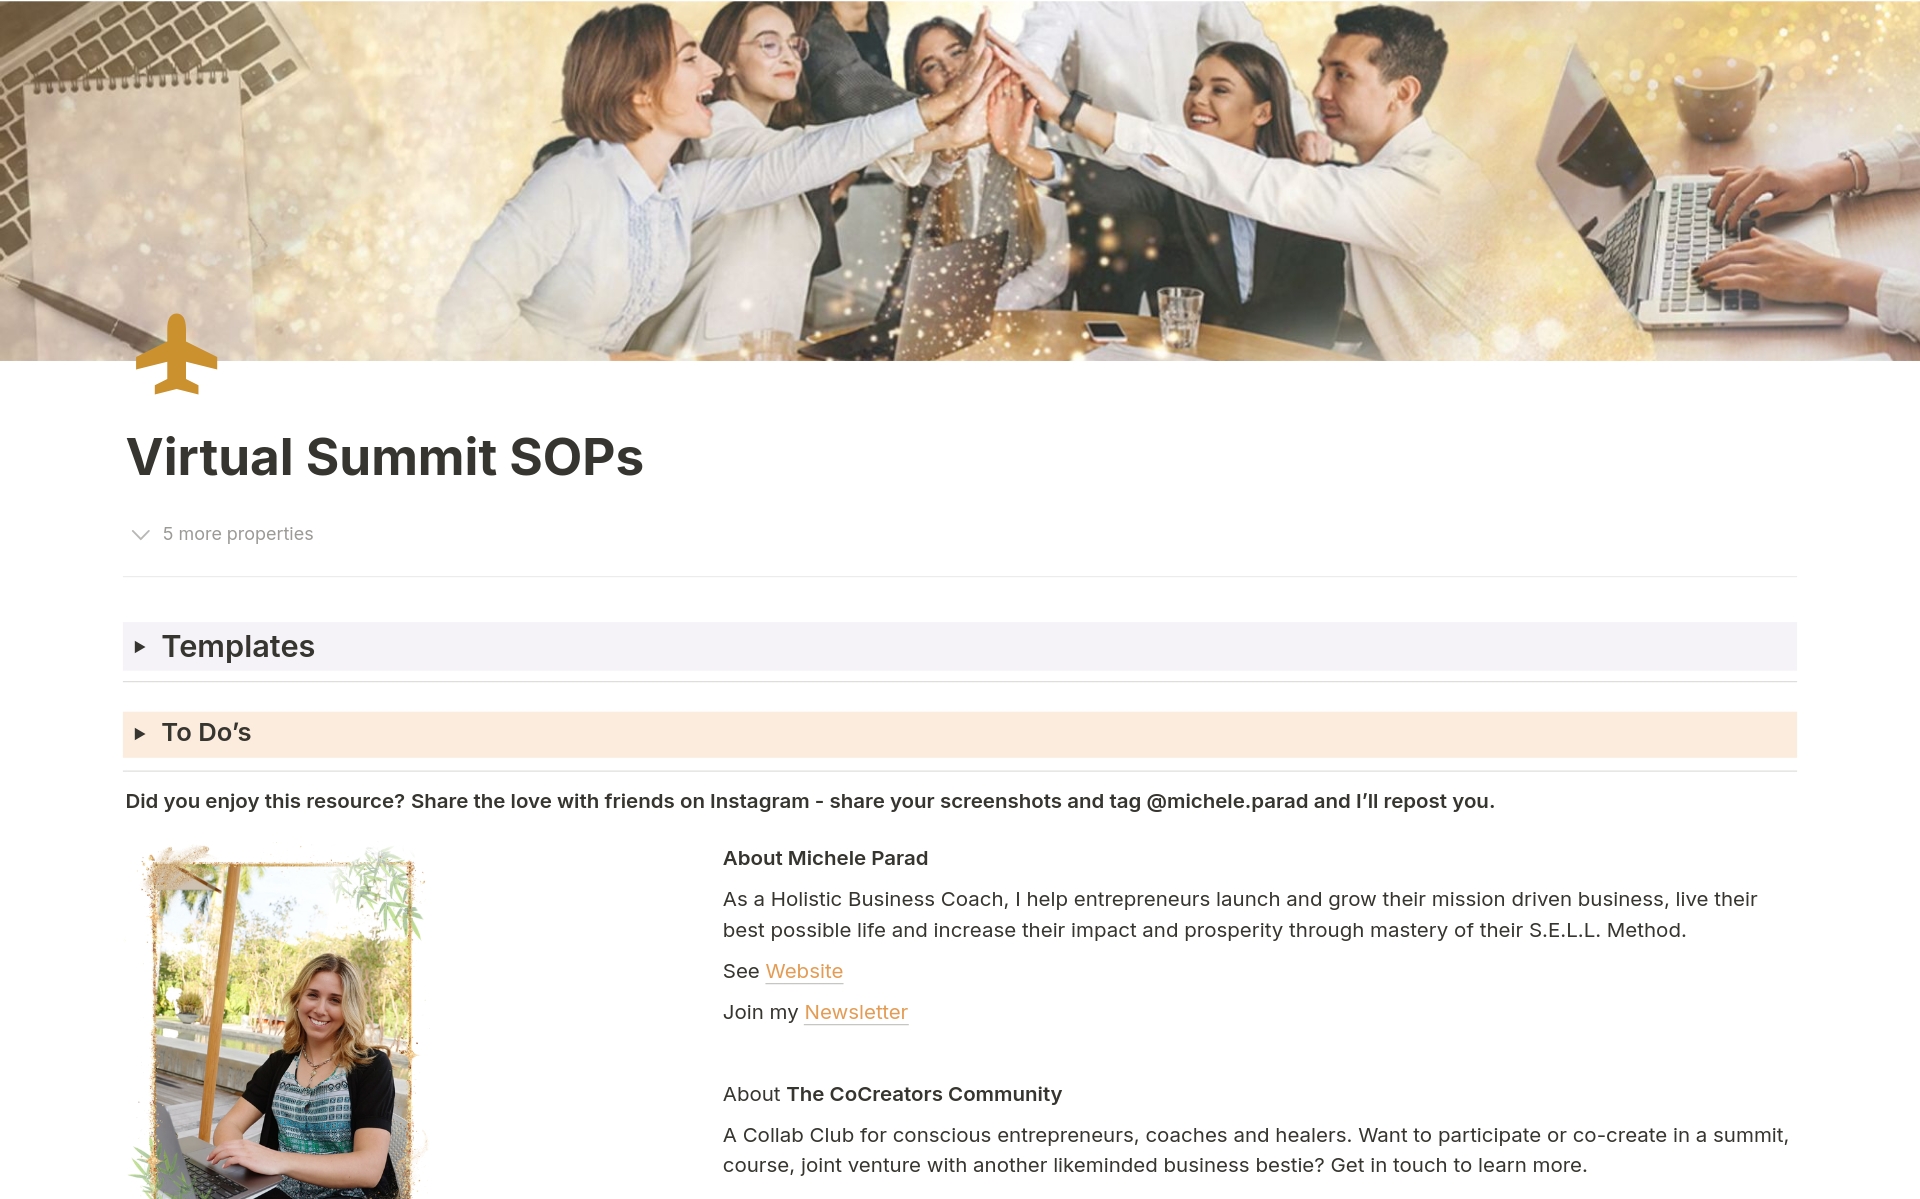 Uma prévia do modelo para Virtual Summit SOPs